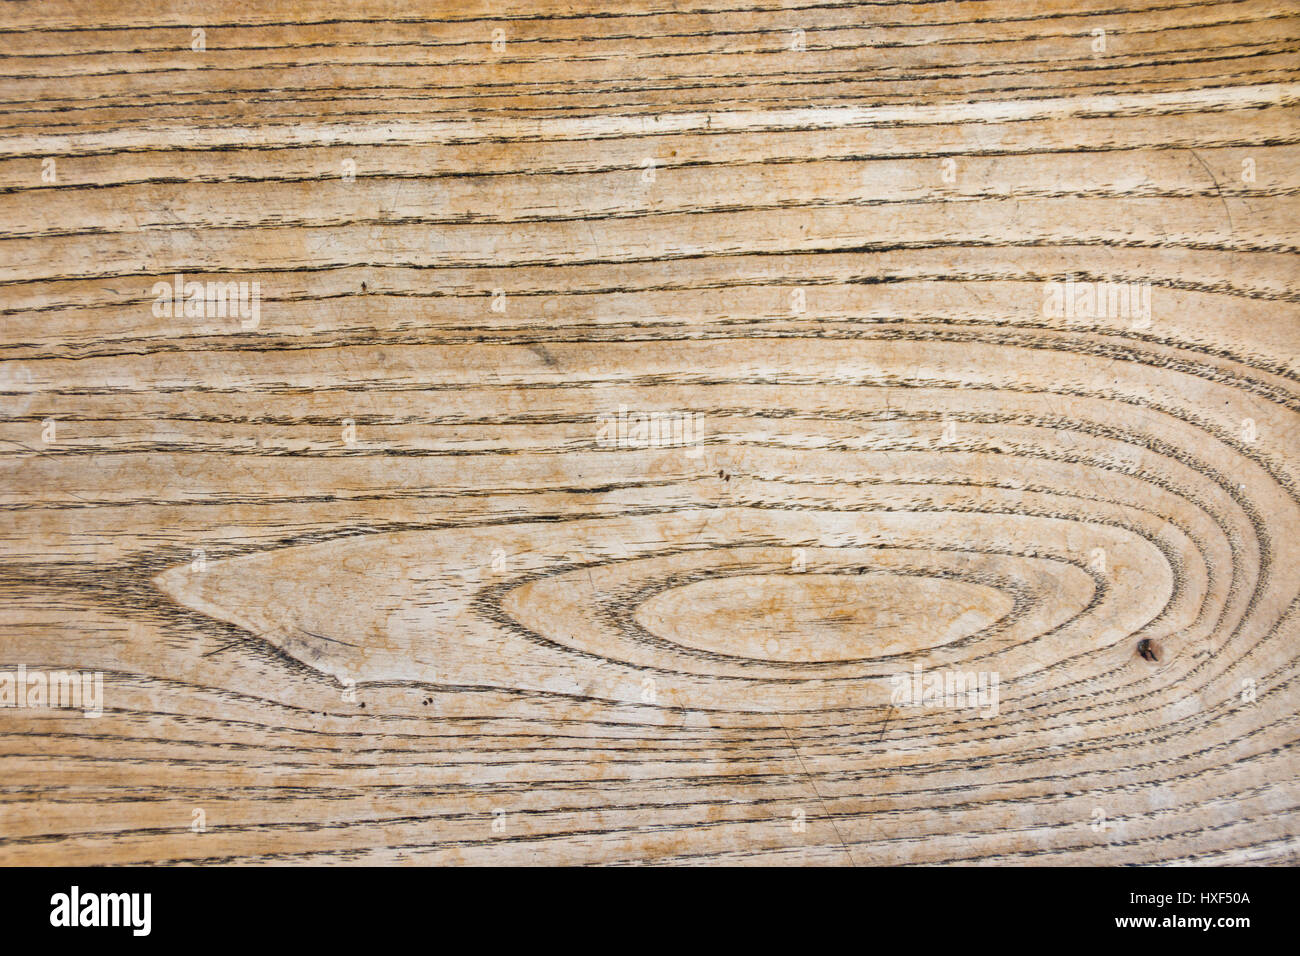 Superficie di legno della vecchia scheda realizzata in legno di frassino. Modello formato da anelli annuali, anello di legno poroso. Sezione trasversale radiale della struttura. Segni visibili di utilizzo. Foto Stock